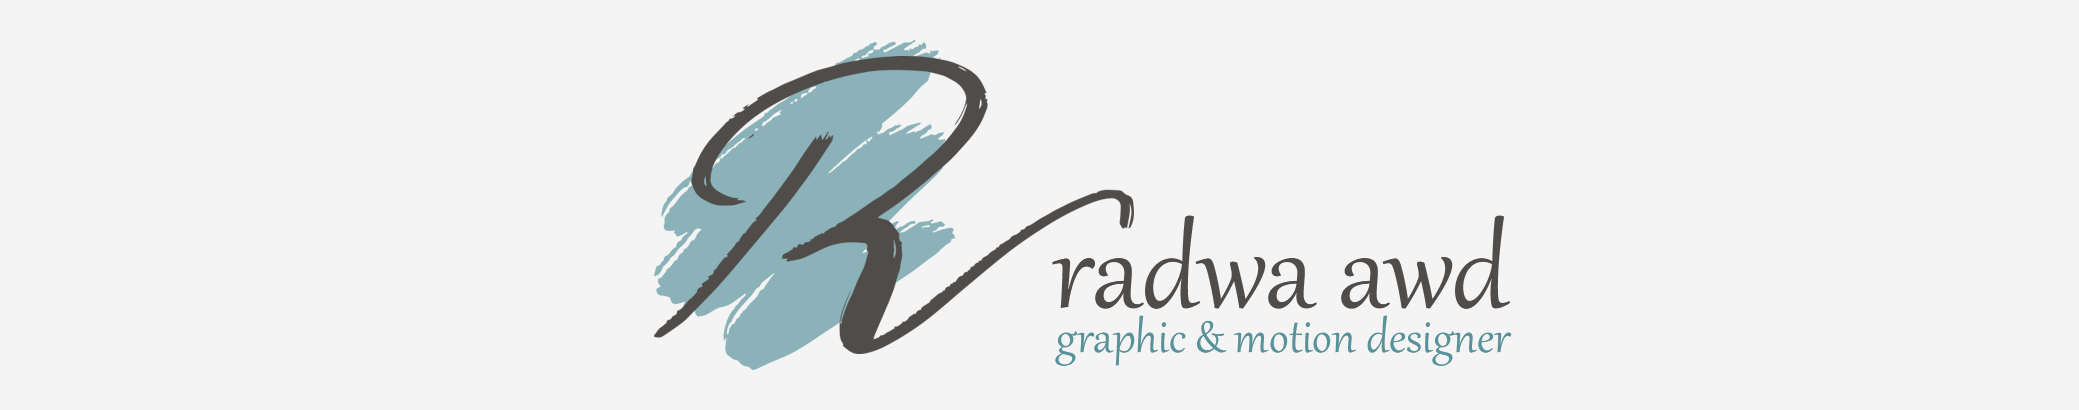 Baner profilu użytkownika RADWA Awd